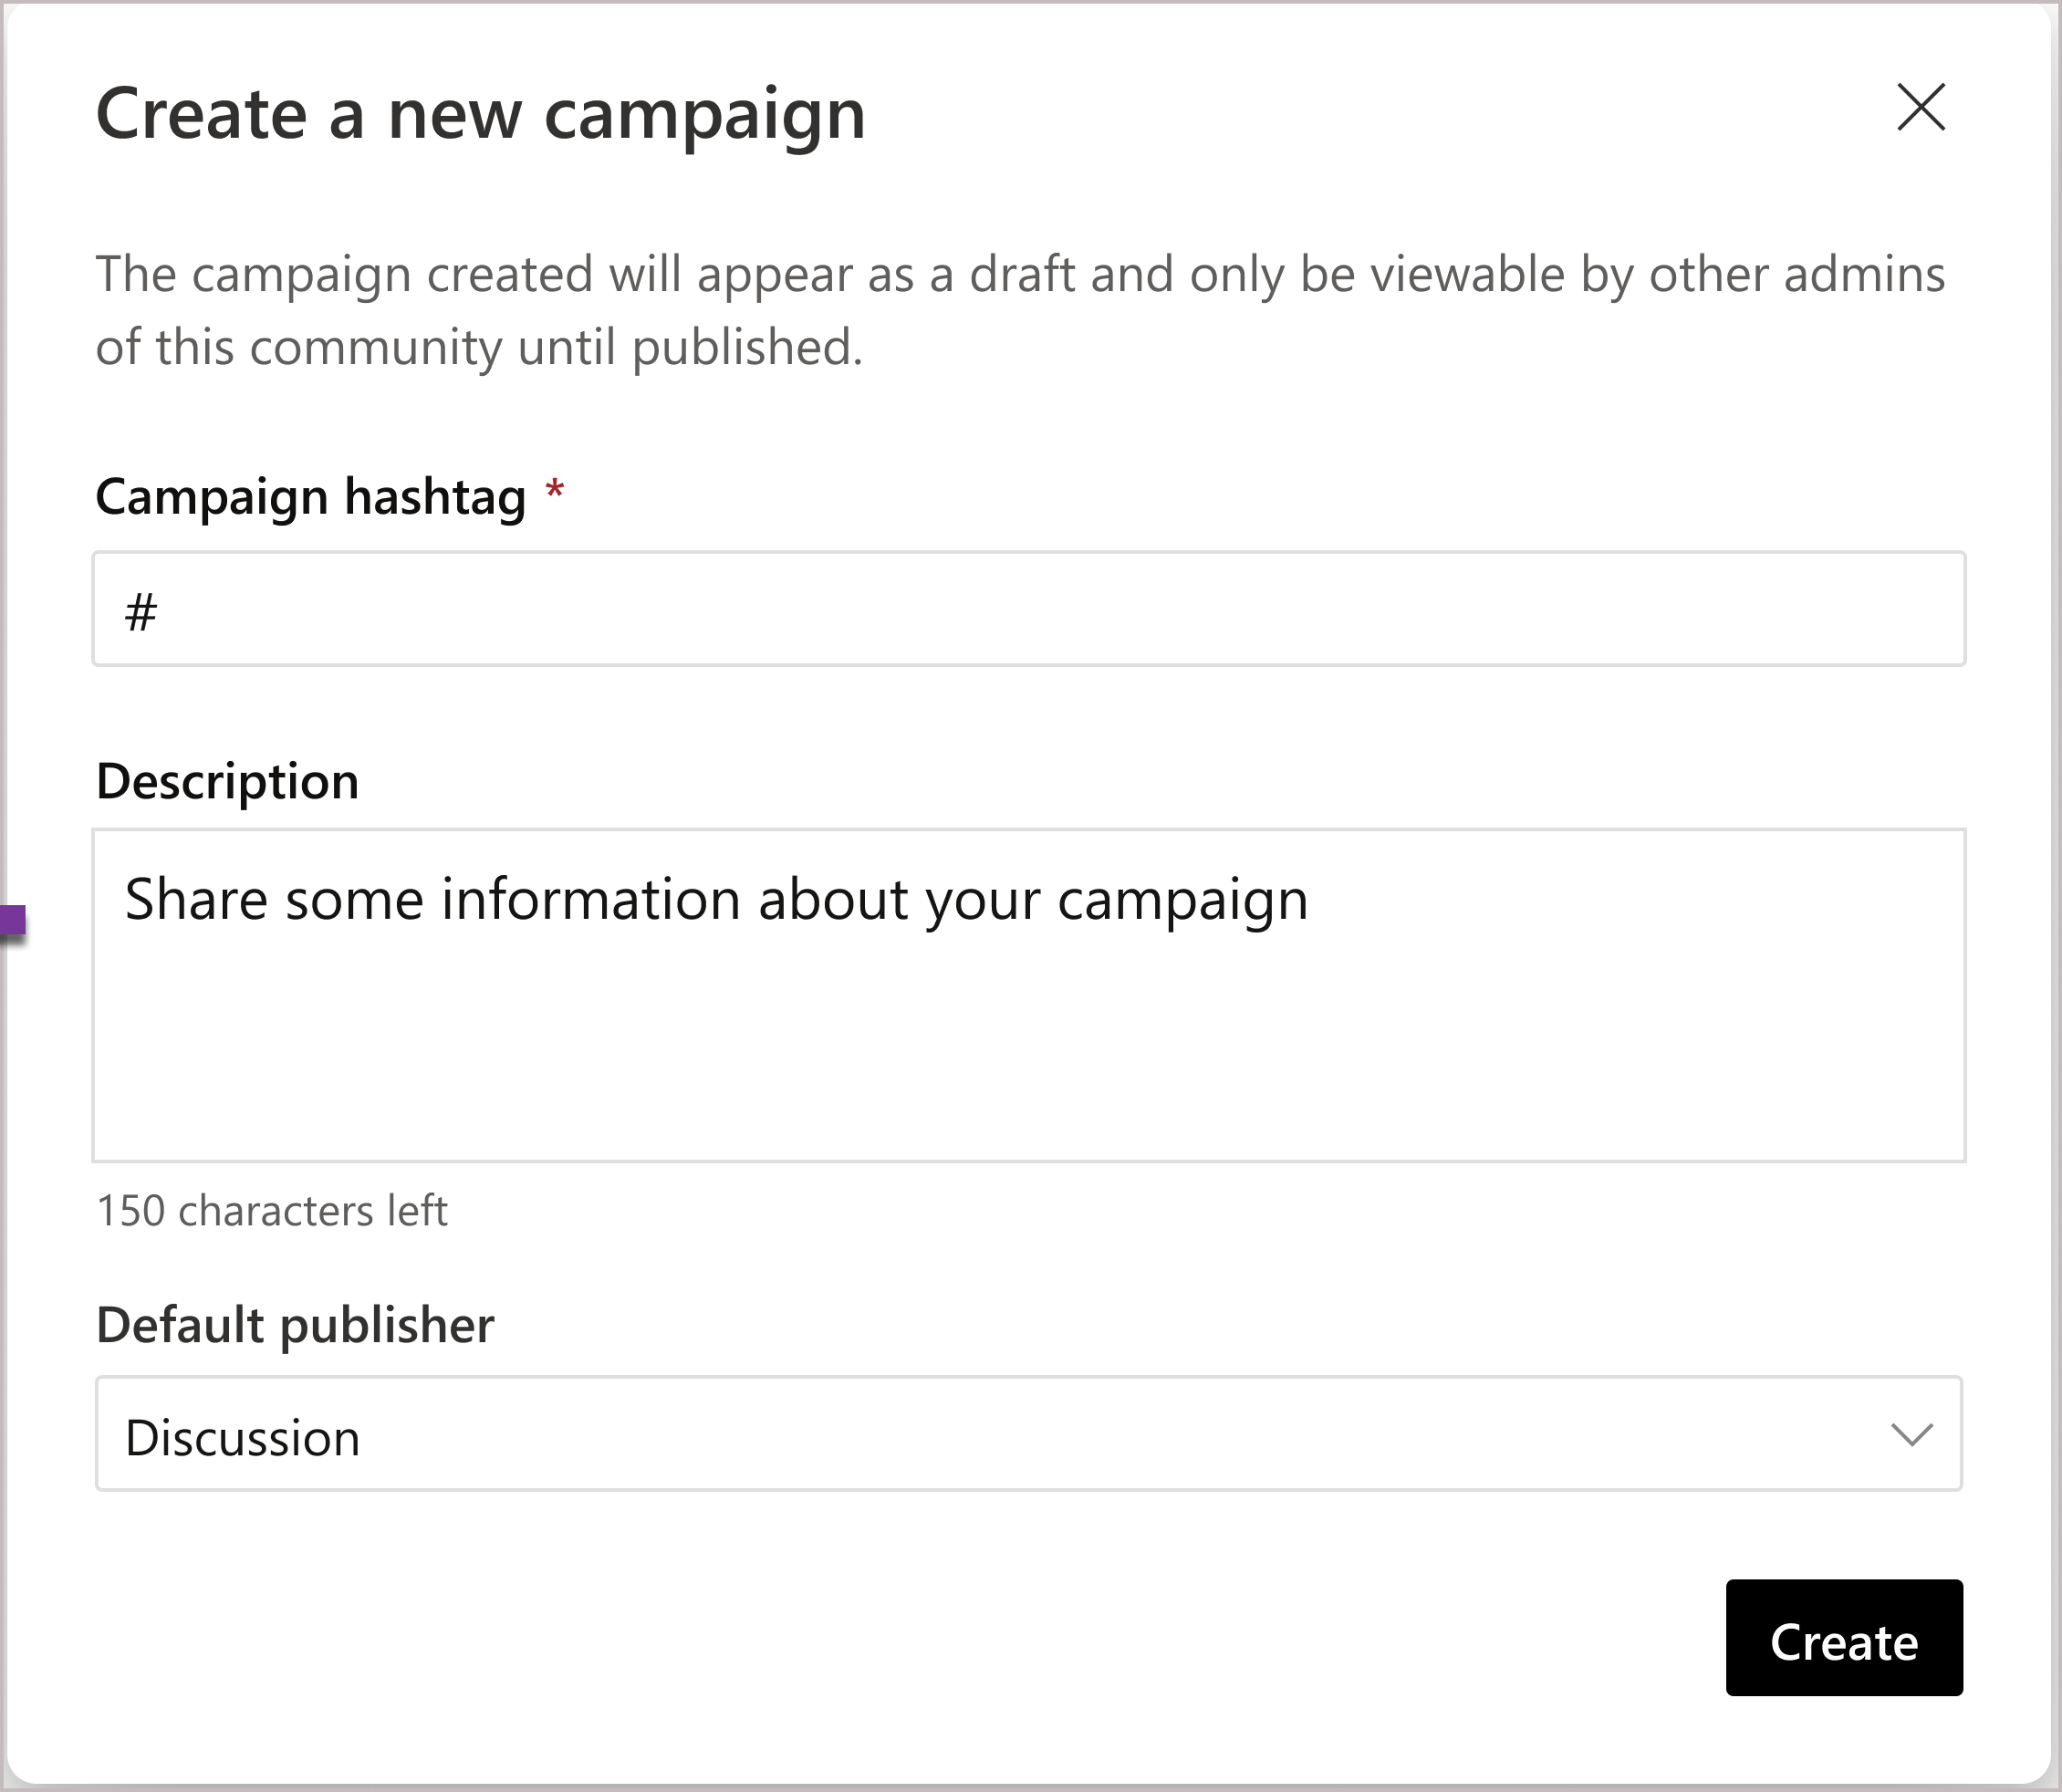 Στιγμιότυπο οθόνης των επιλογών για τη δημιουργία μιας νέας εκστρατείας κοινότητας